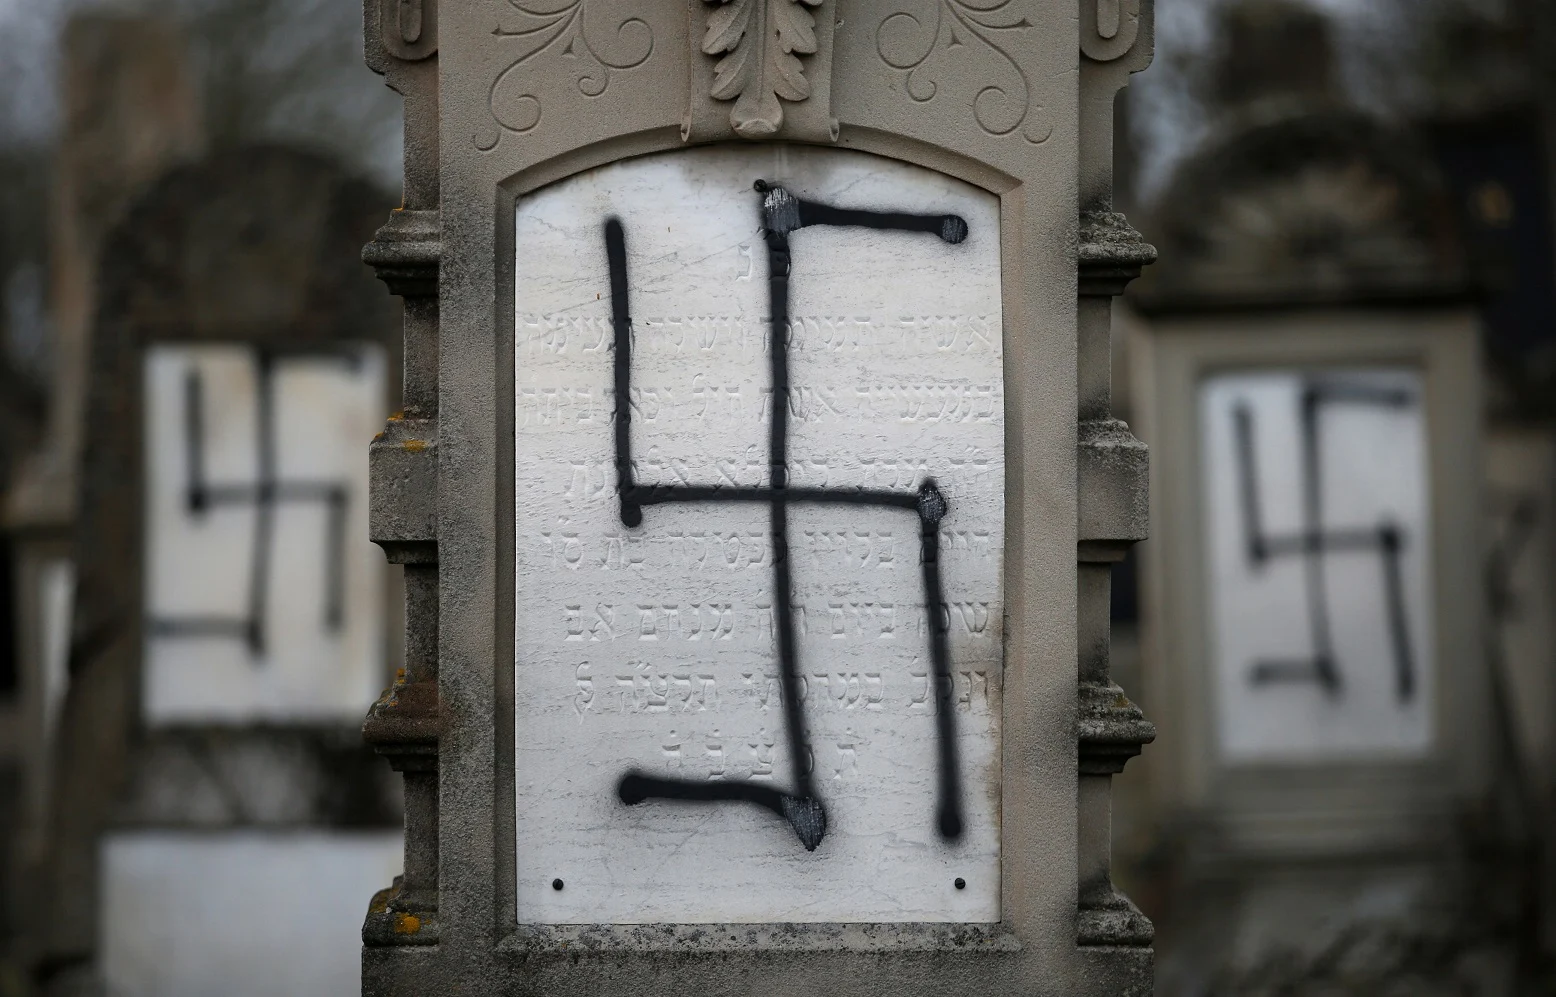 צלבי קרס רוססו על מצבות ואנדרטאות לזכר השואה בשטרסבורג (ארכיון)